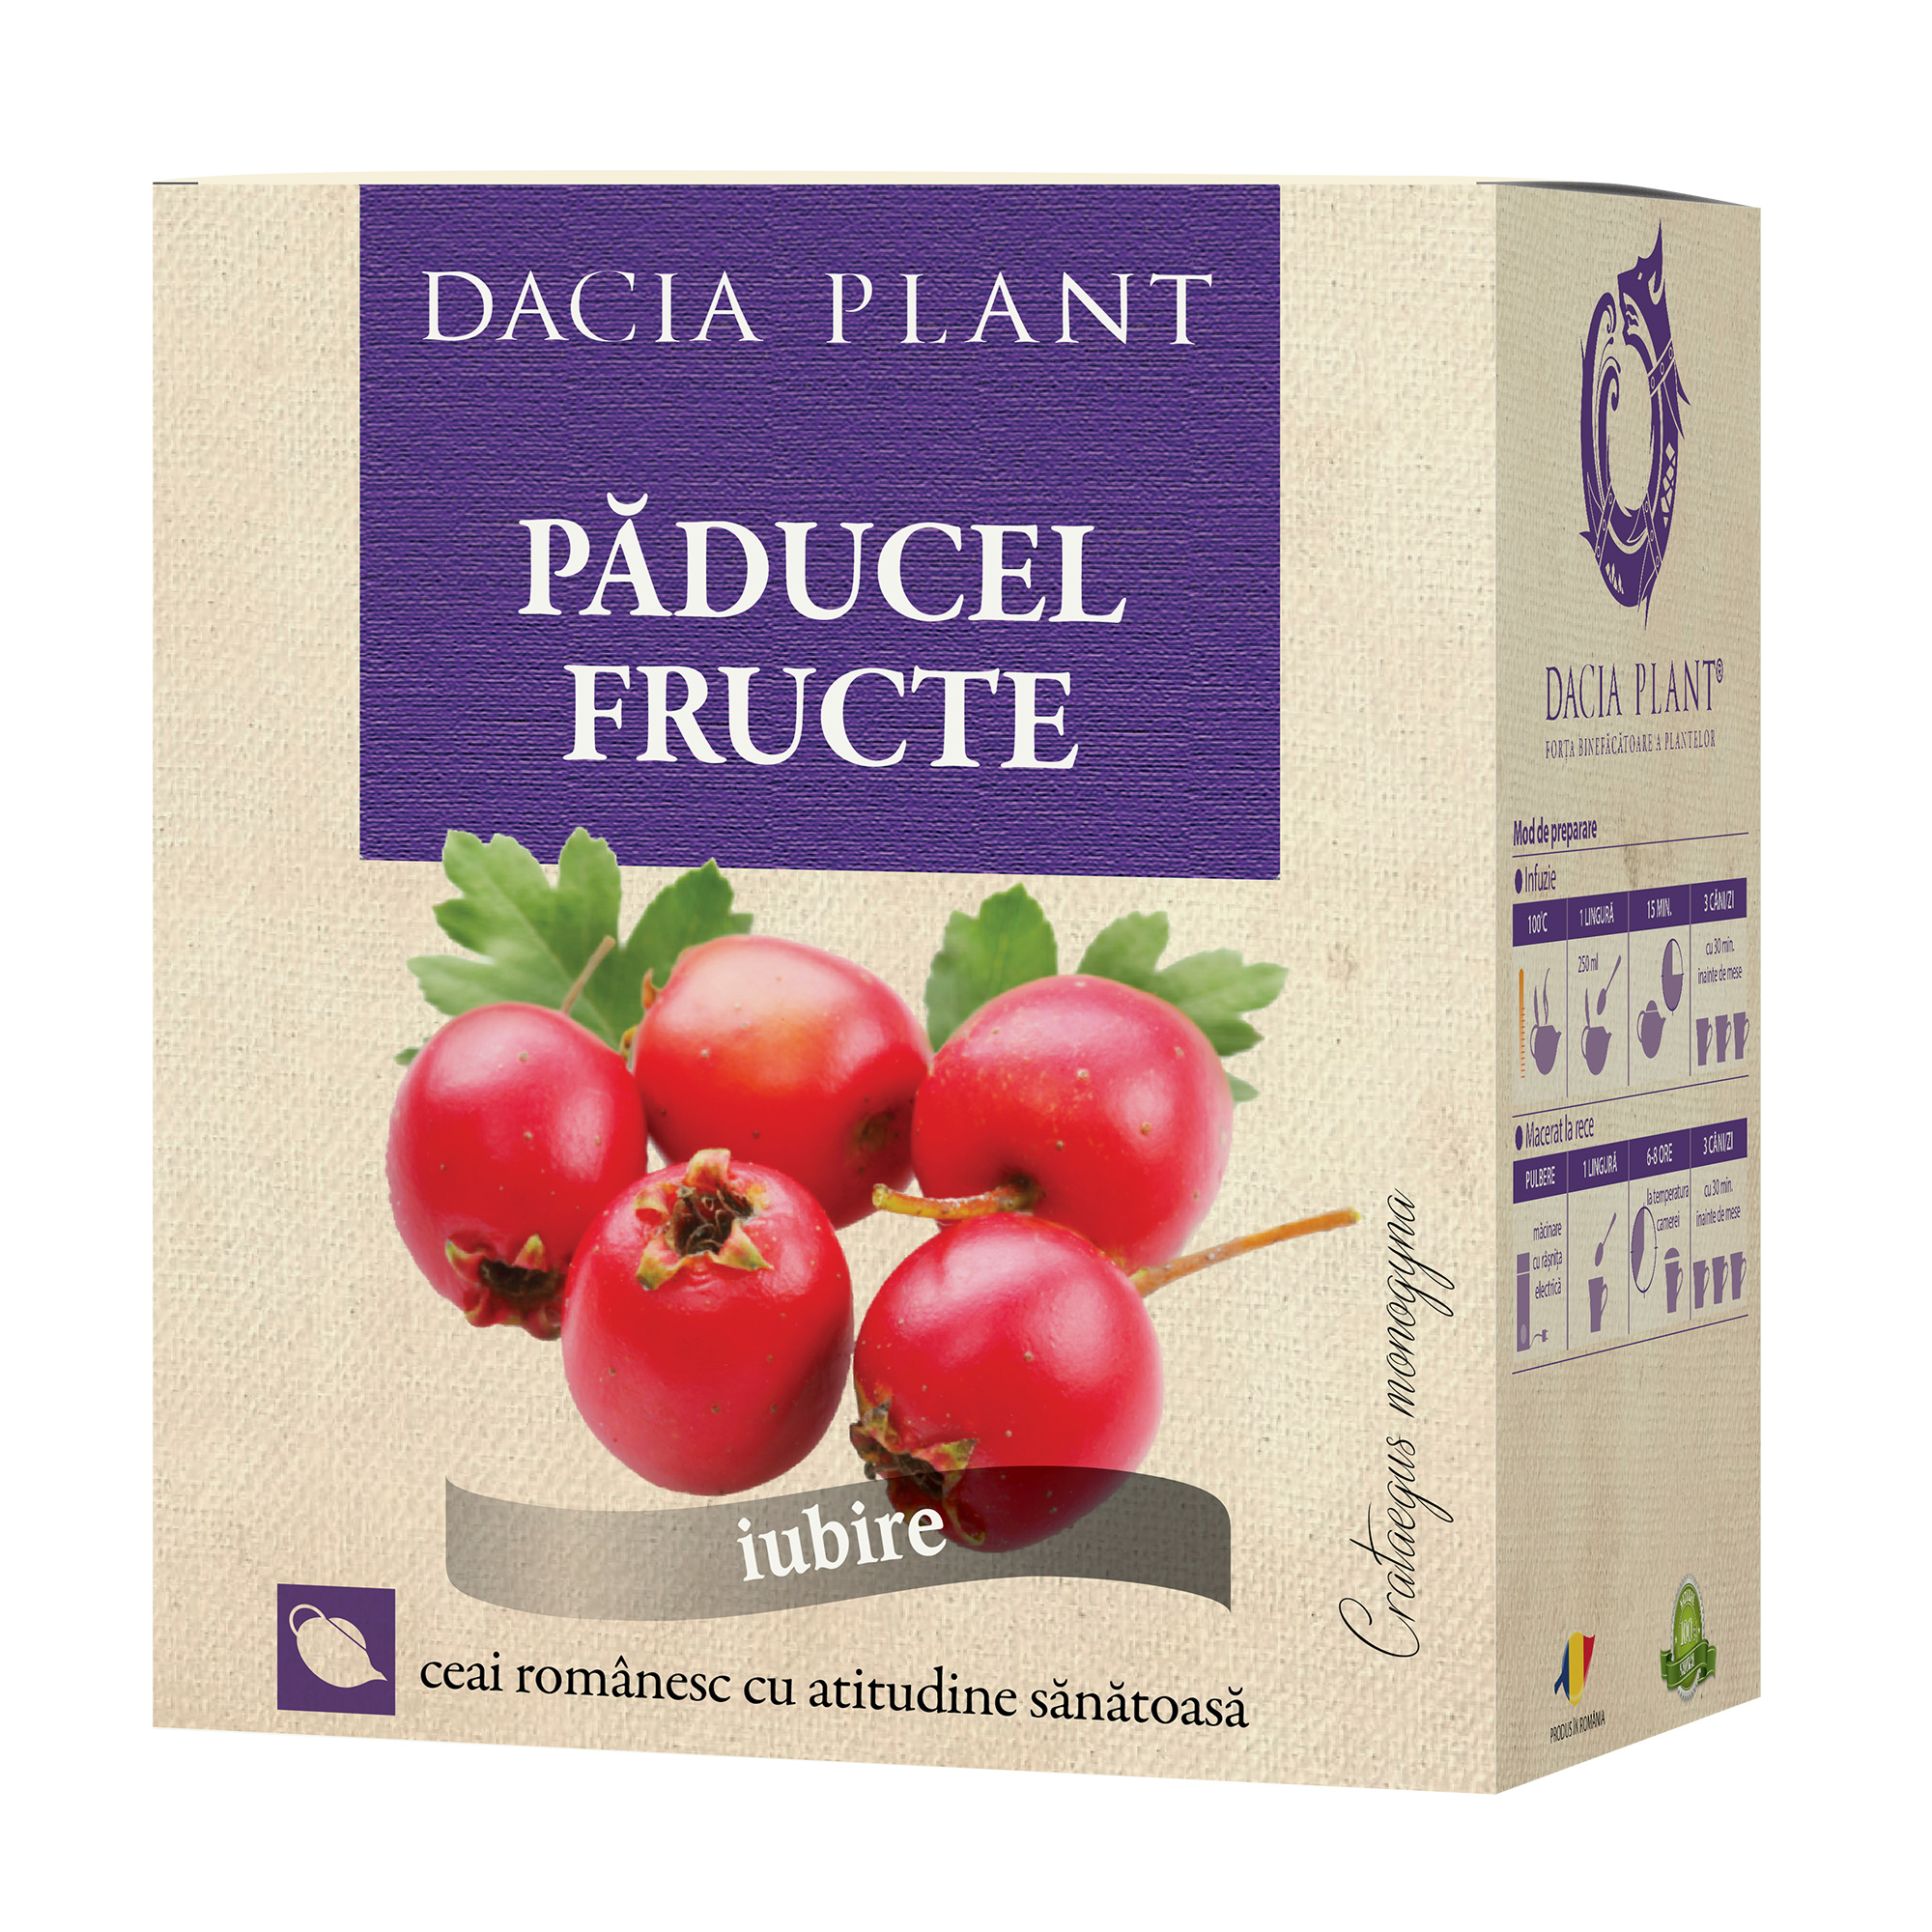 Ceai de Paducel fructe Dacia Plant imagine noua